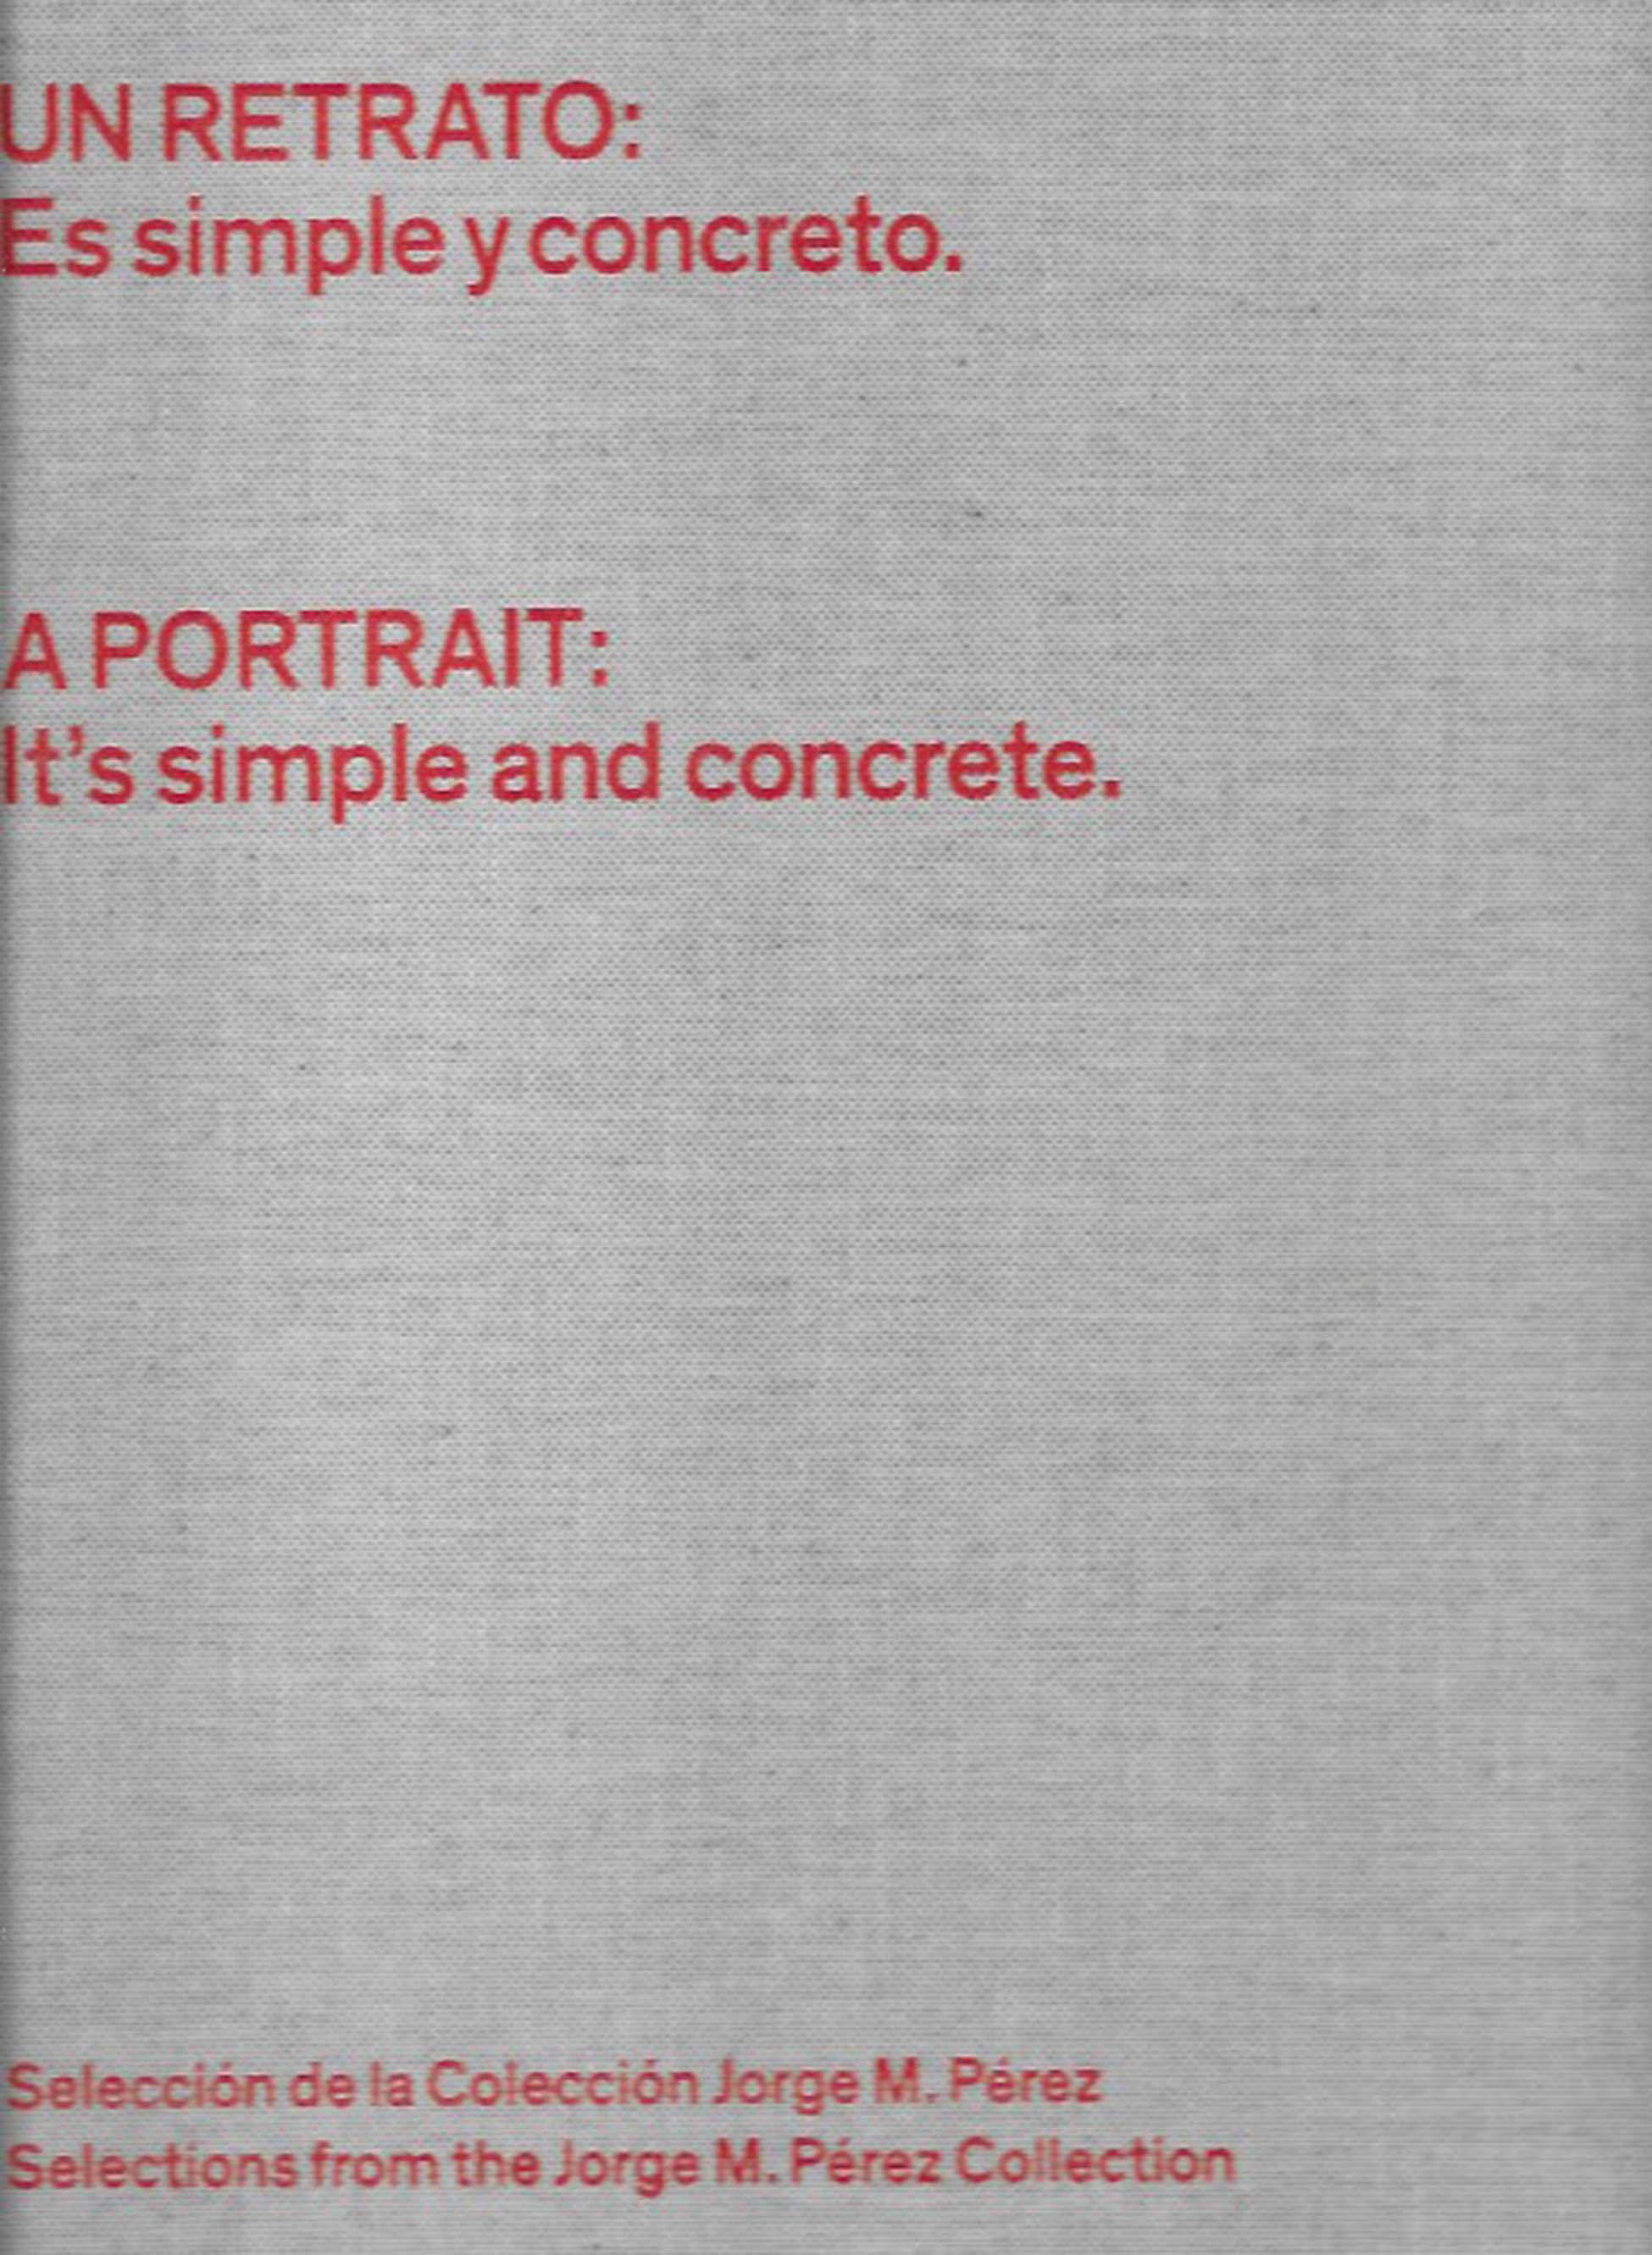 Un Retrato es simple y concreto.